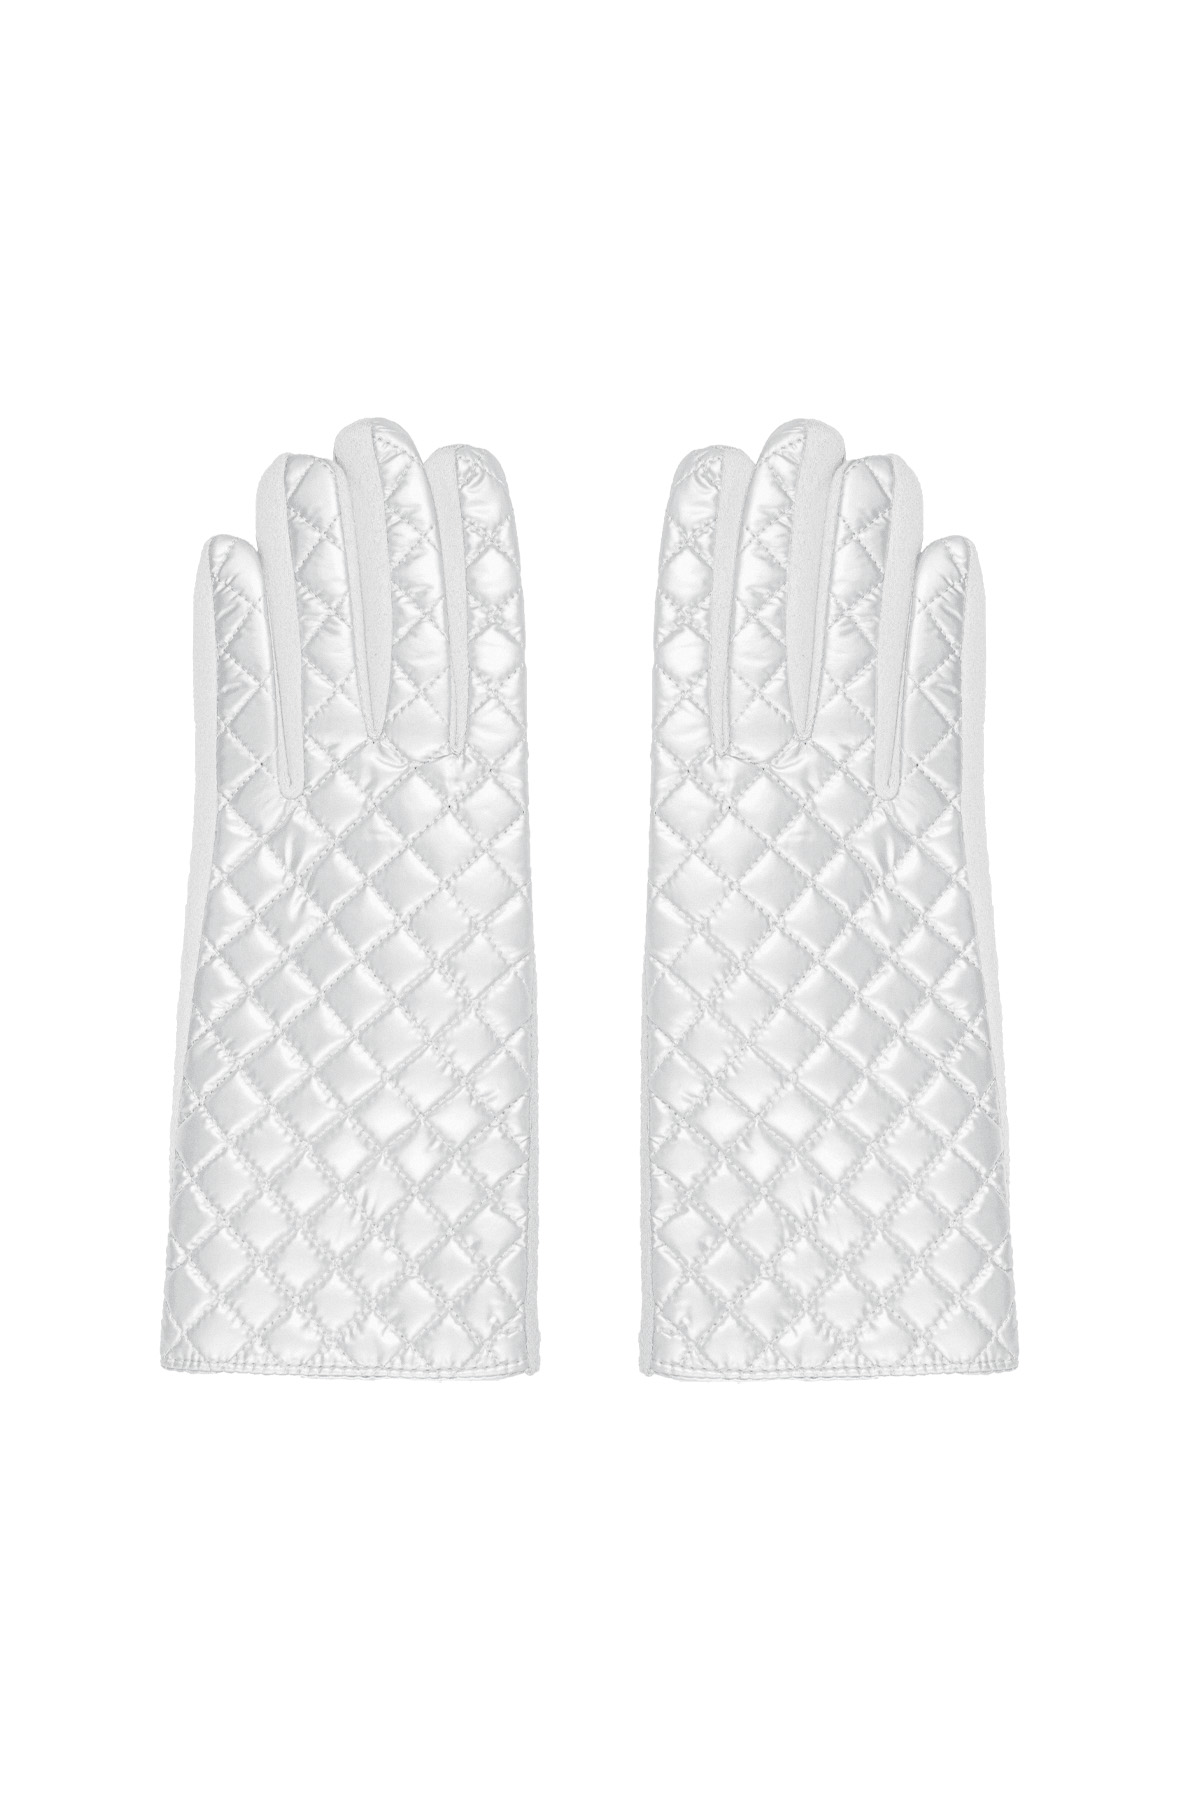 Handschoenen met gestikt patroon - wit 